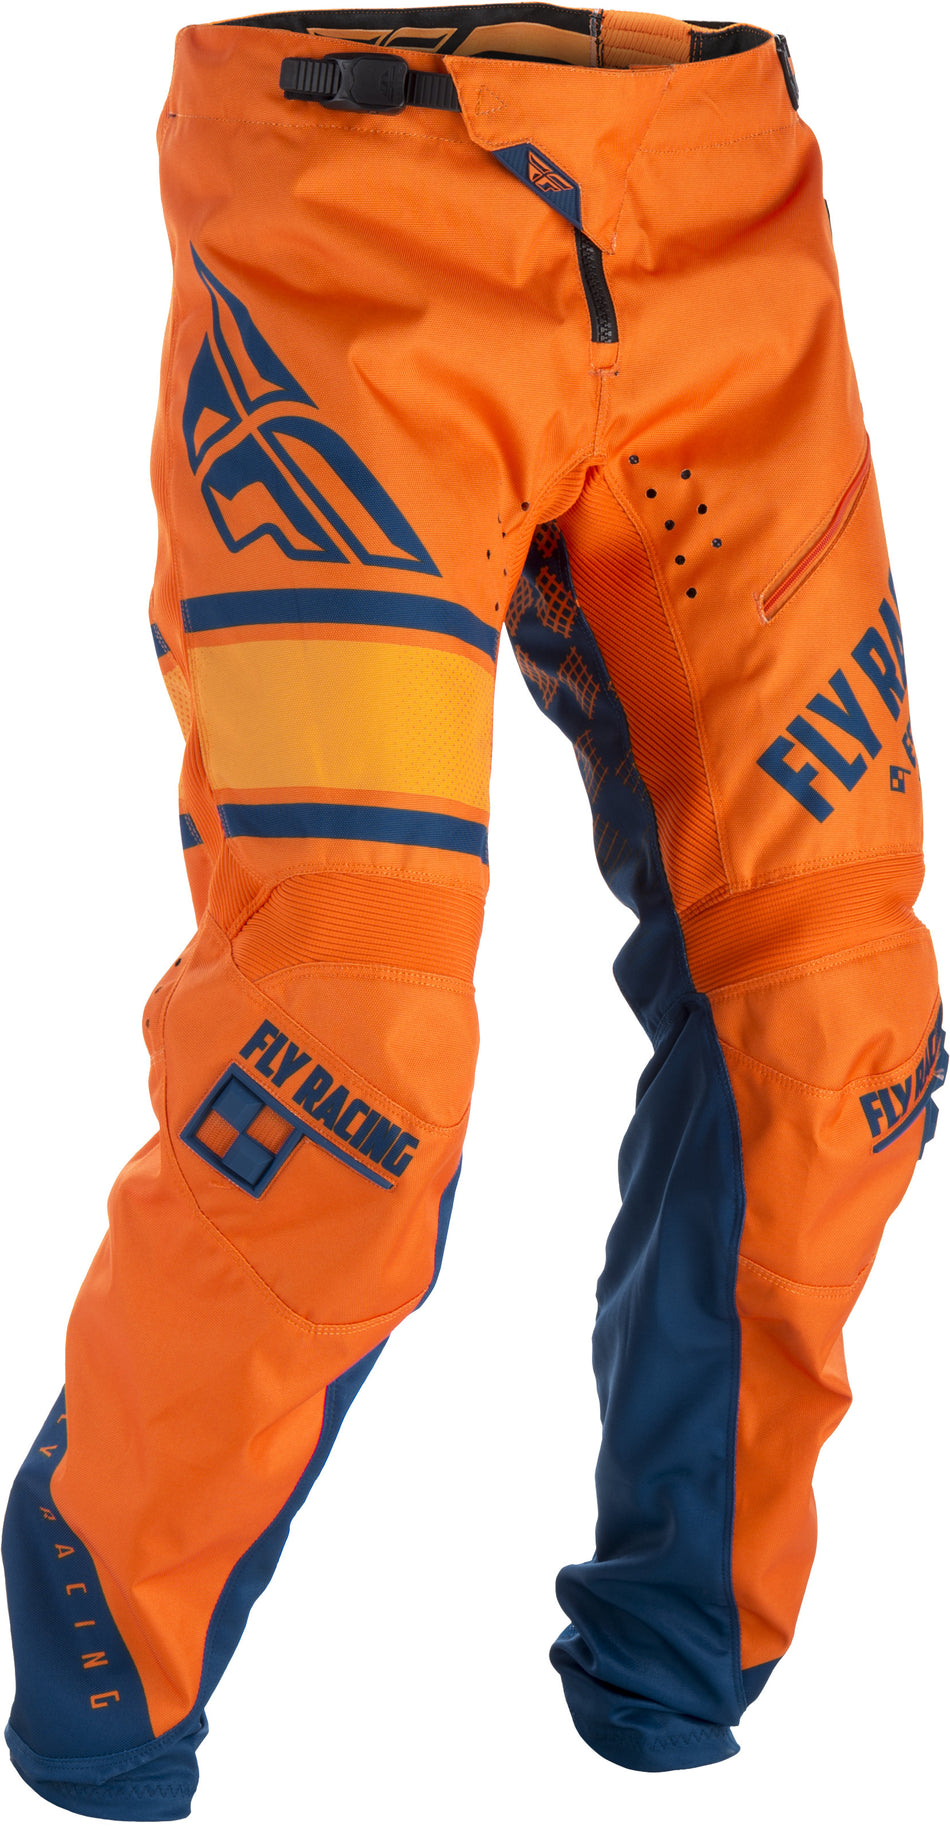 FLY RACING Kinetic Era Bicycle Pants Orange/Navy Sz 18 371-02818